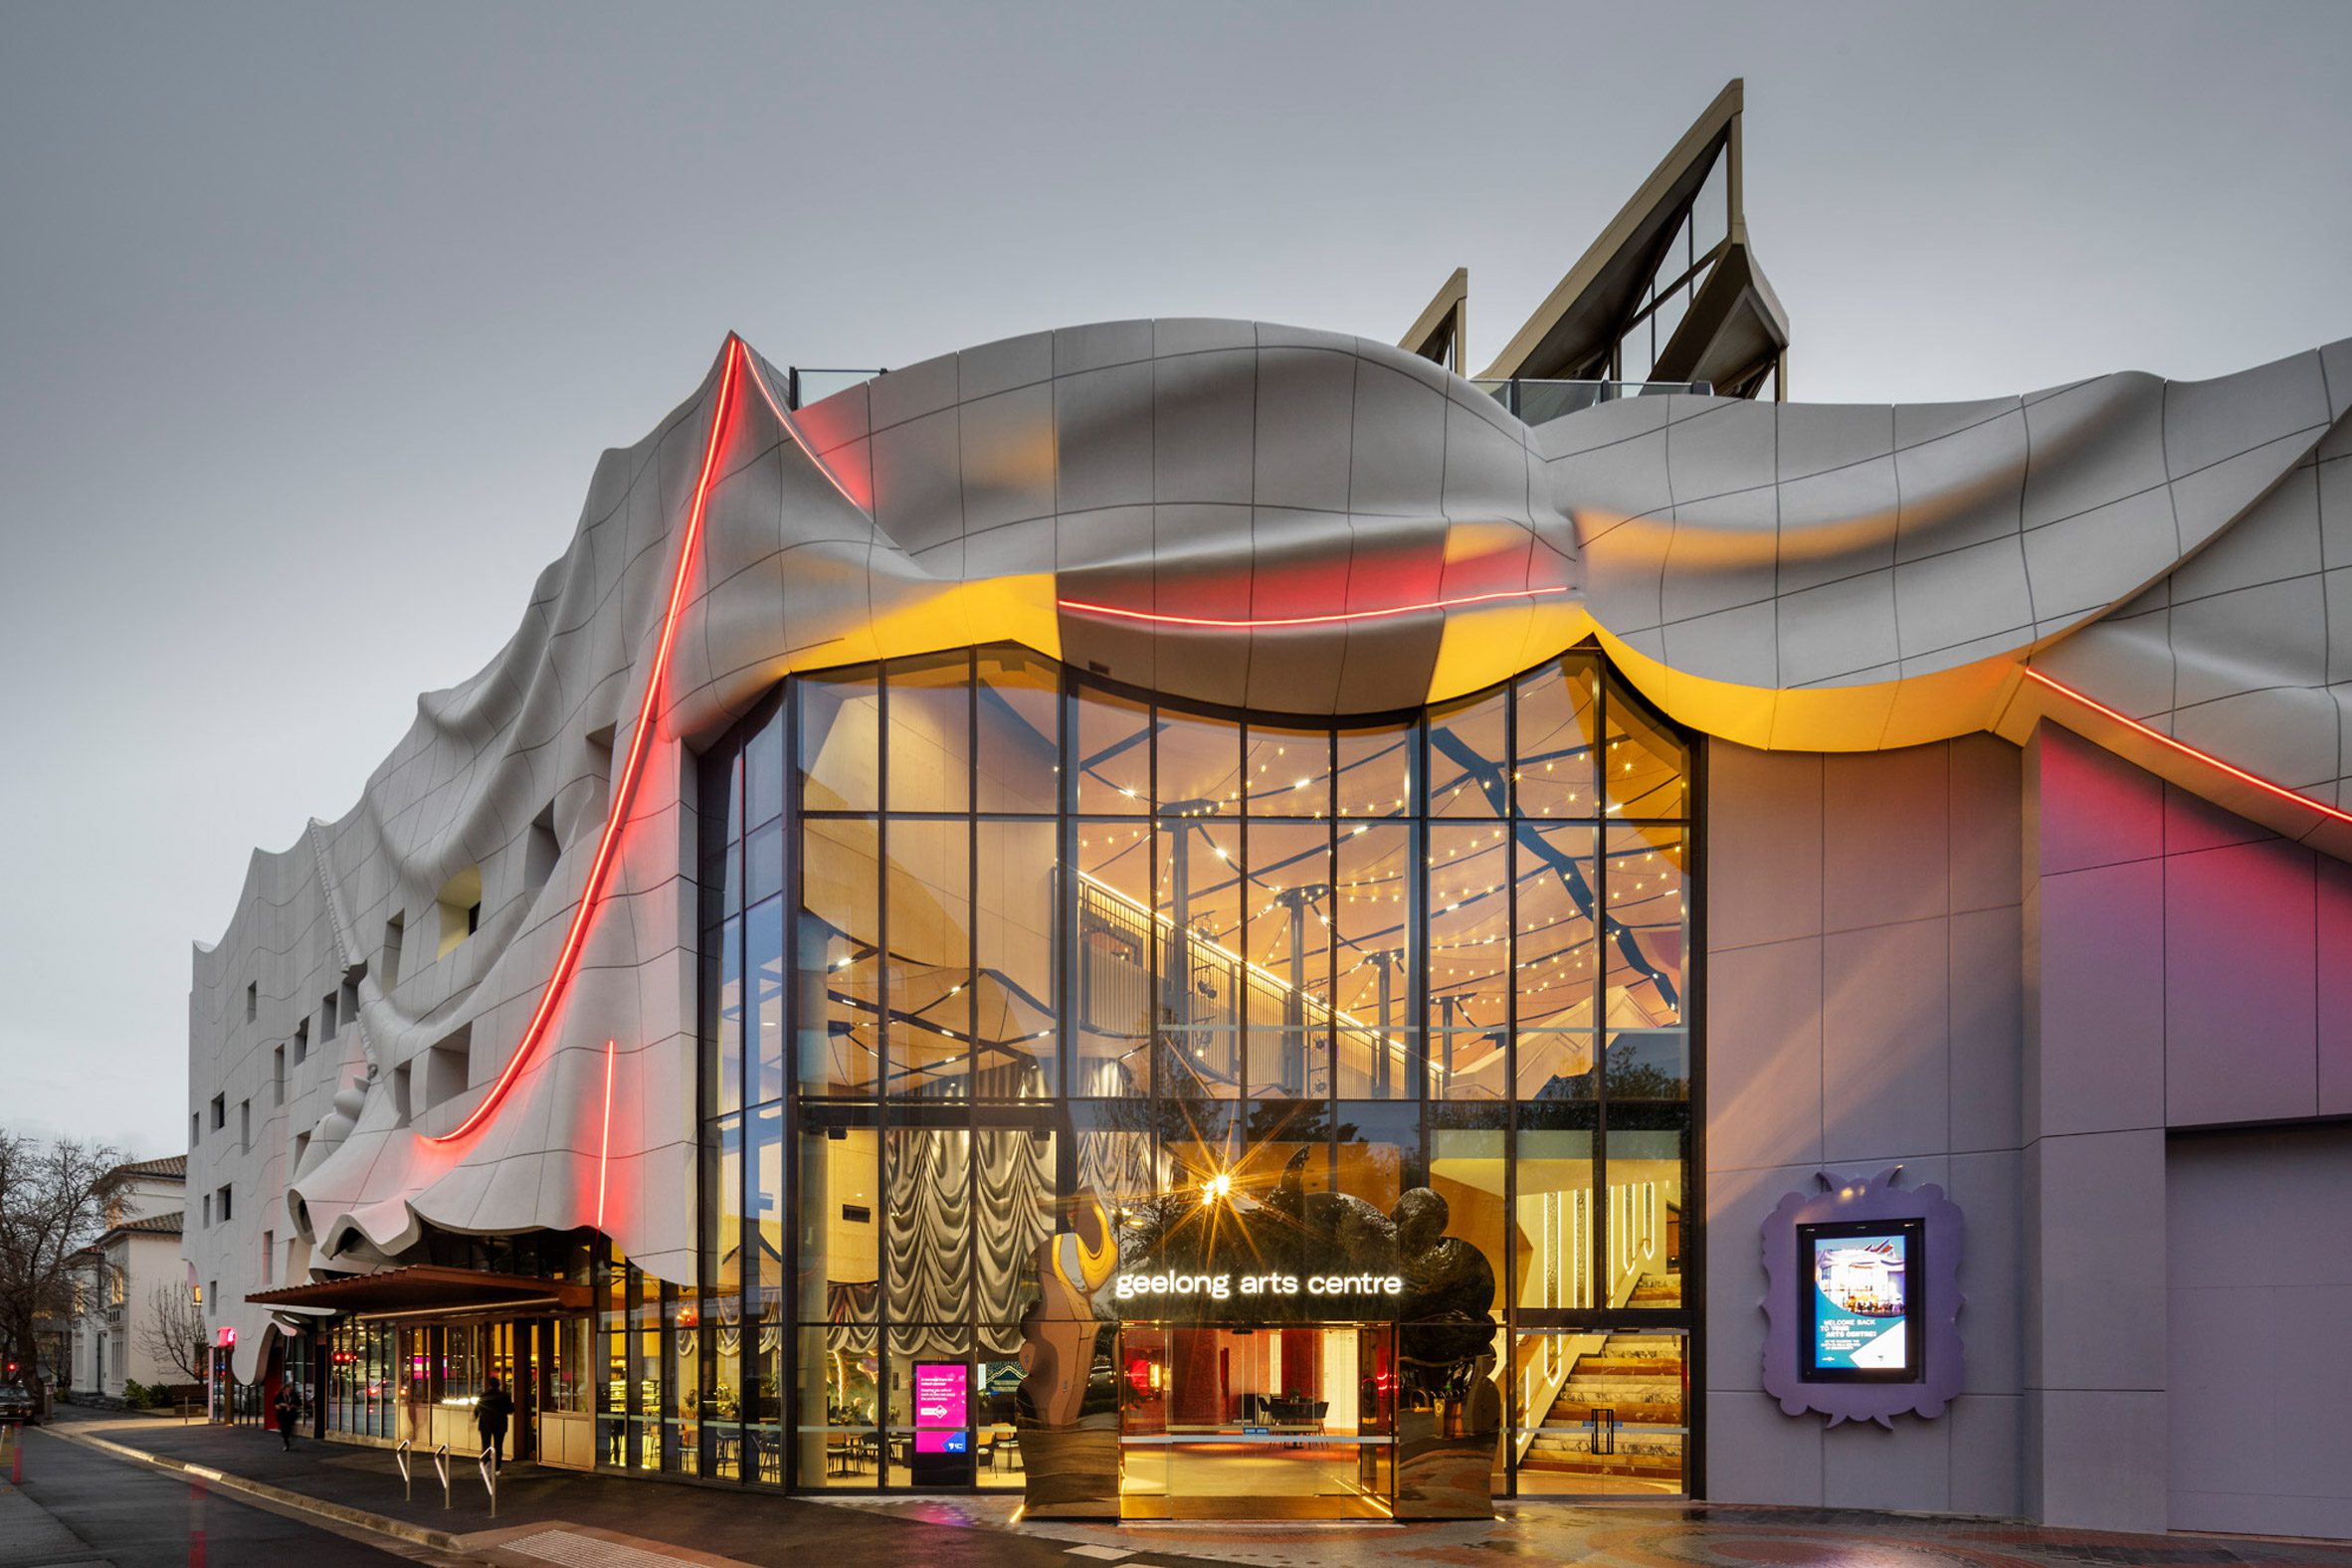 ARM建筑公司用俯冲的混凝土窗帘覆盖吉隆艺术中心|ART-Arrakis | 建筑室内设计的创新与灵感